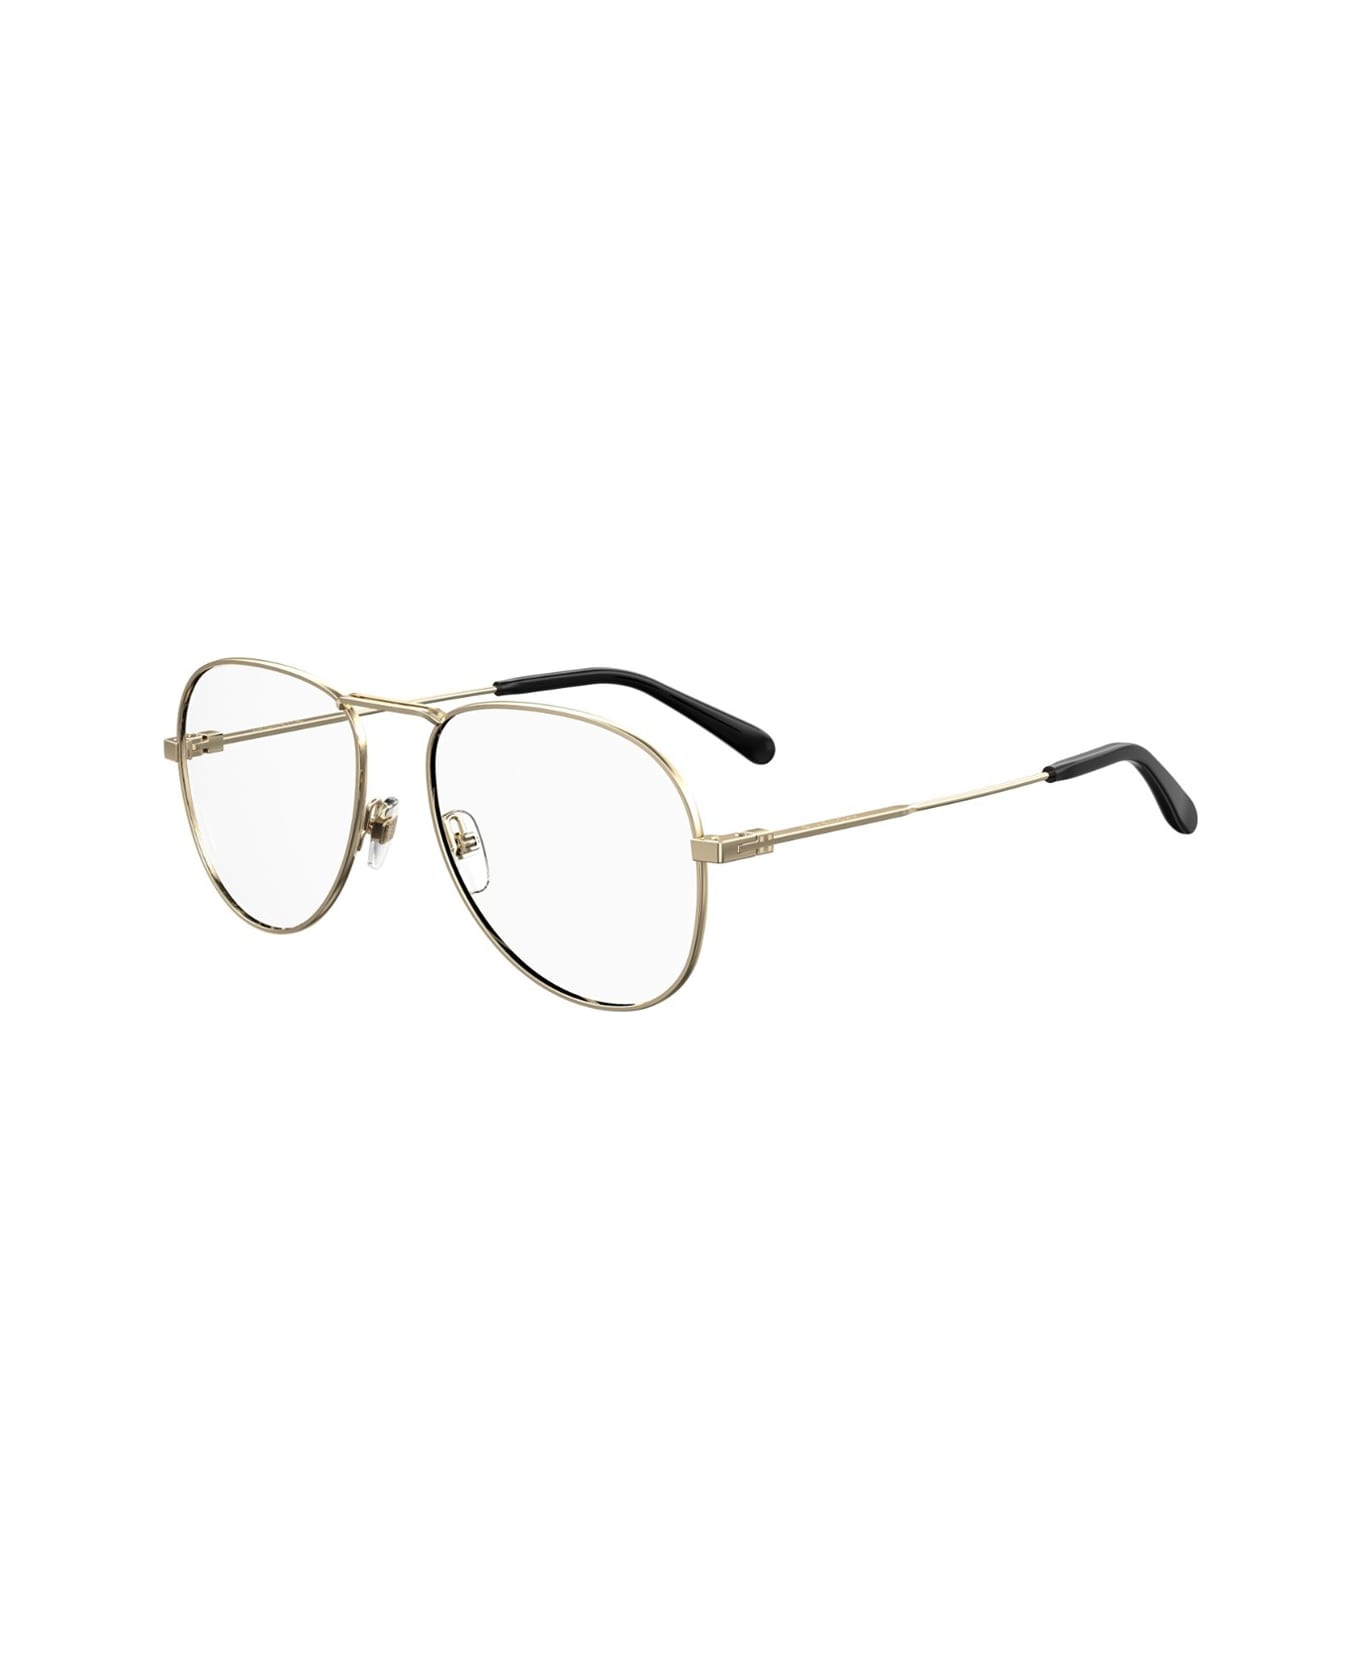 Givenchy Eyewear Gv0117 Glasses - Oro